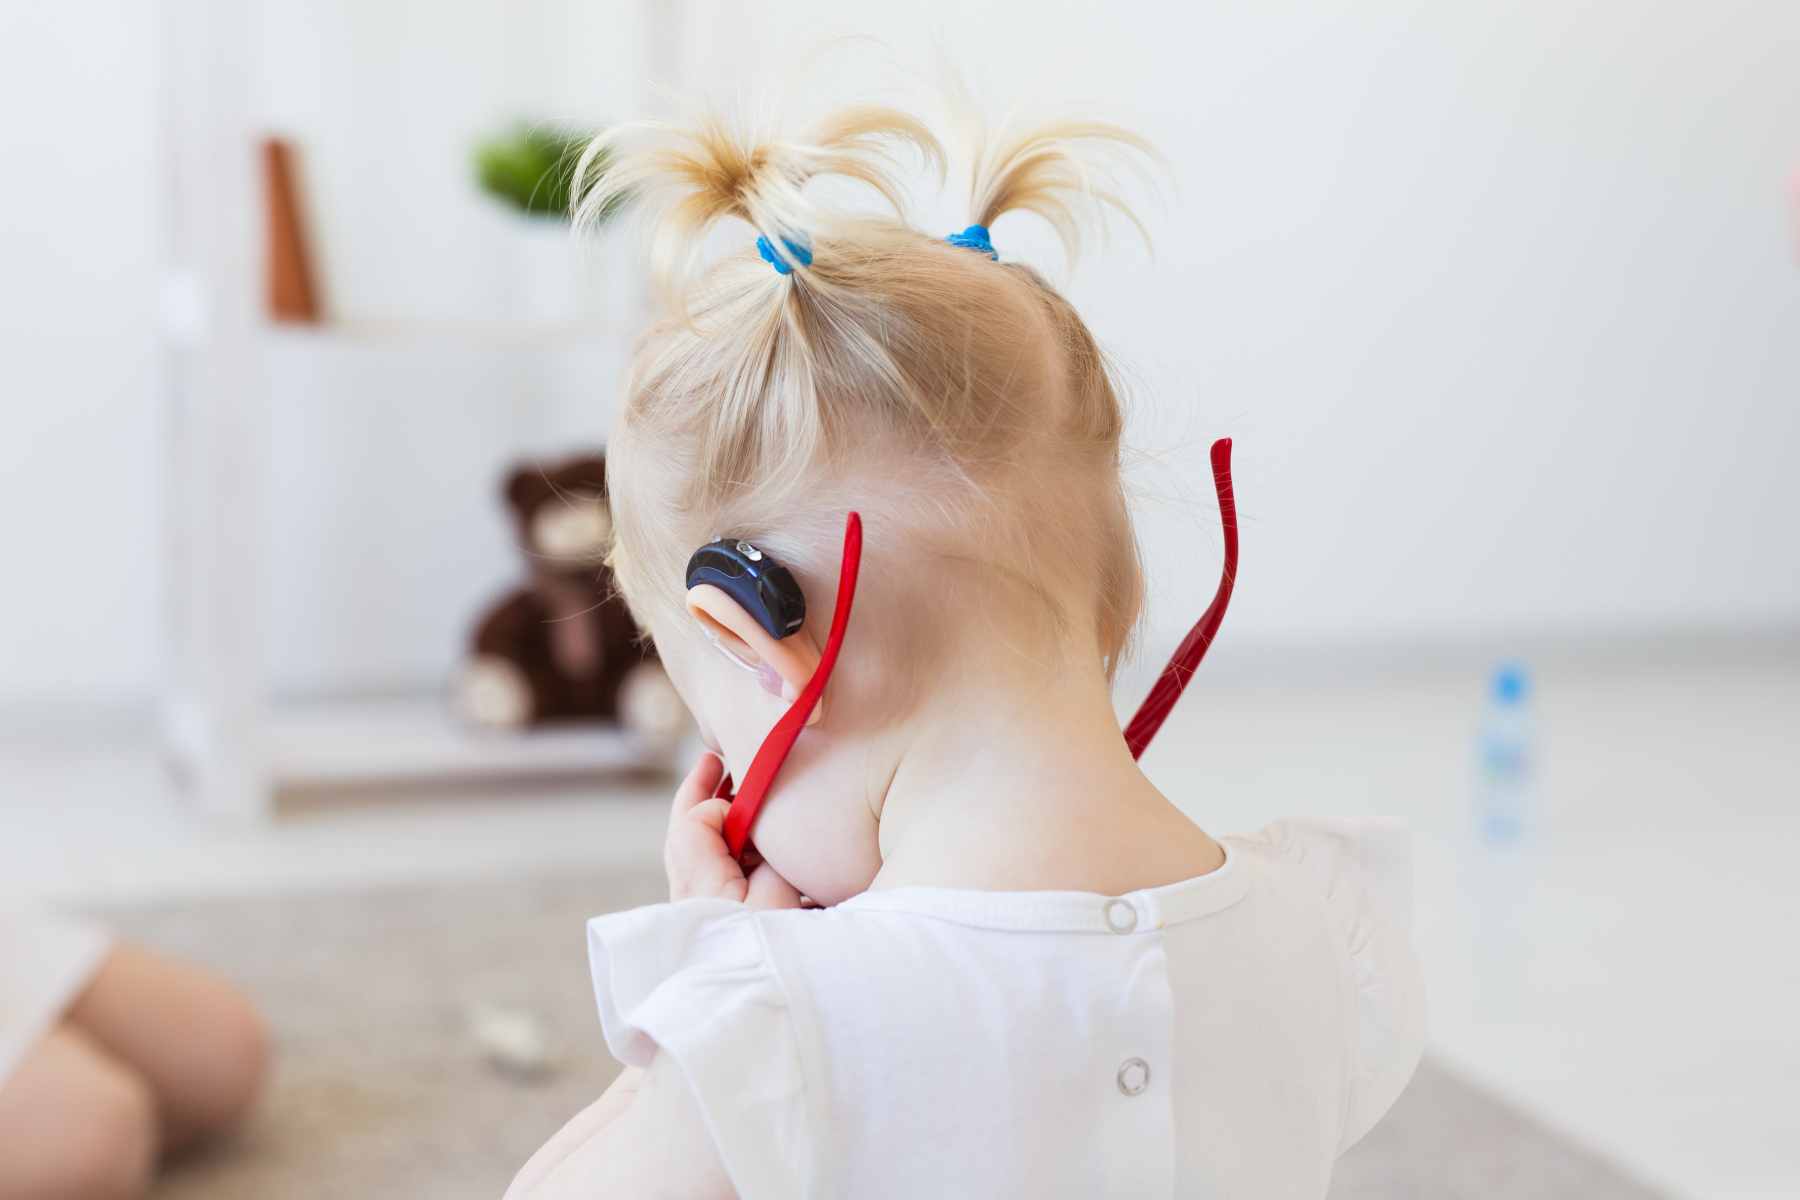 Barn med høreapparat